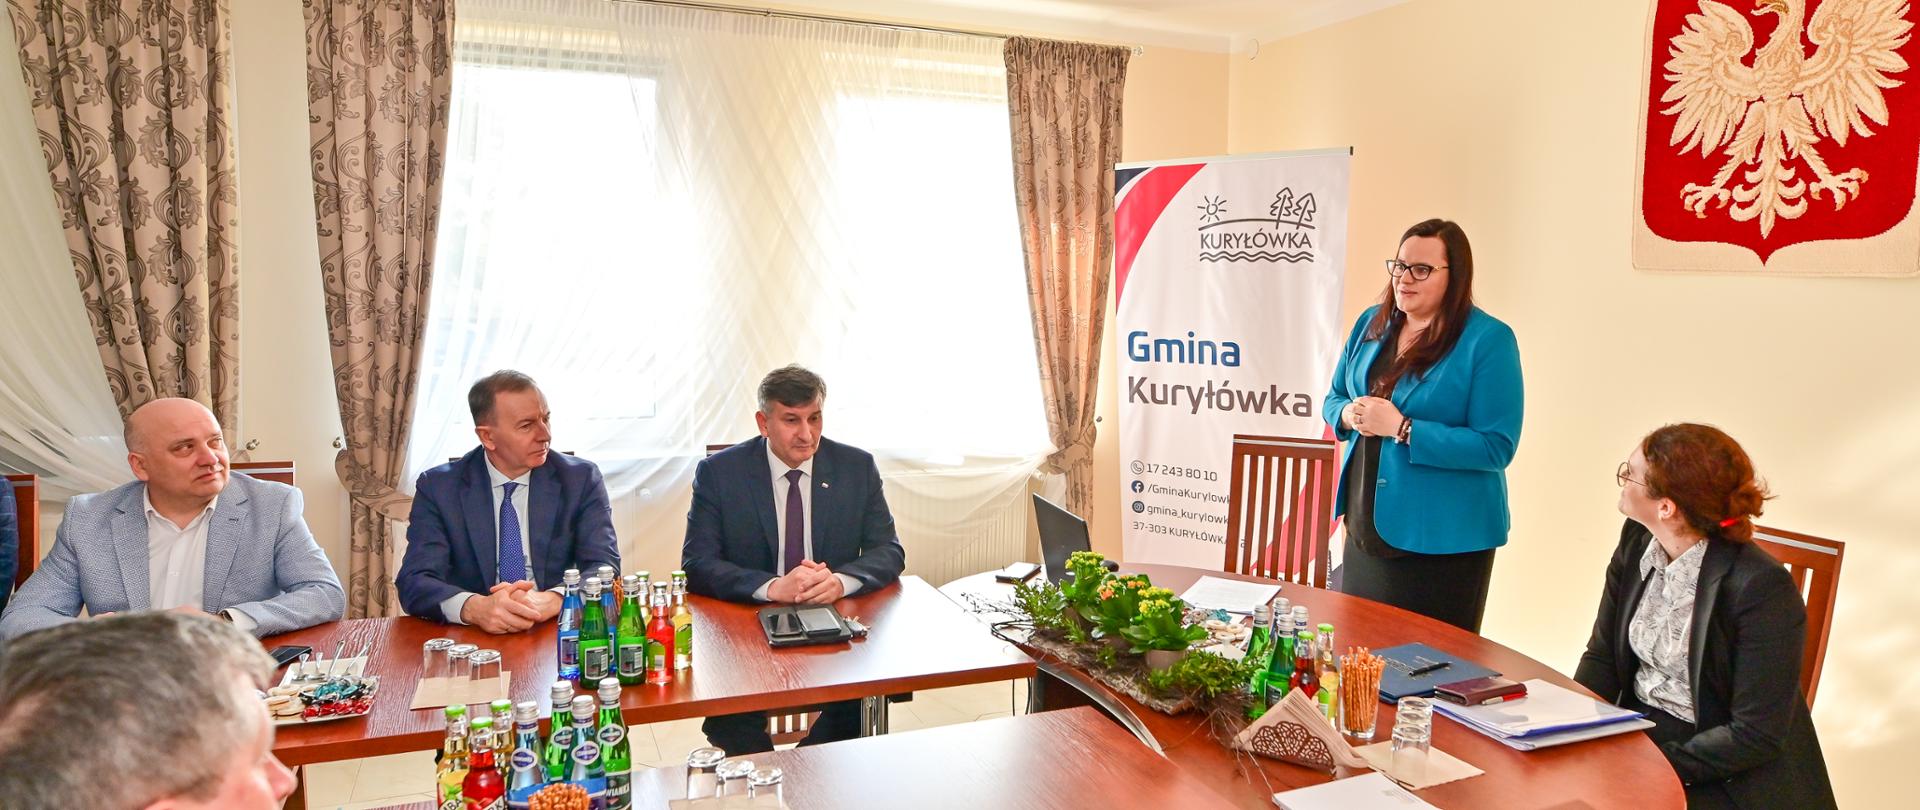 Grupa osób w sali siedzi przy stołach. Obok stoi wiceminister Małgorzata Jarosińska-Jedynak.